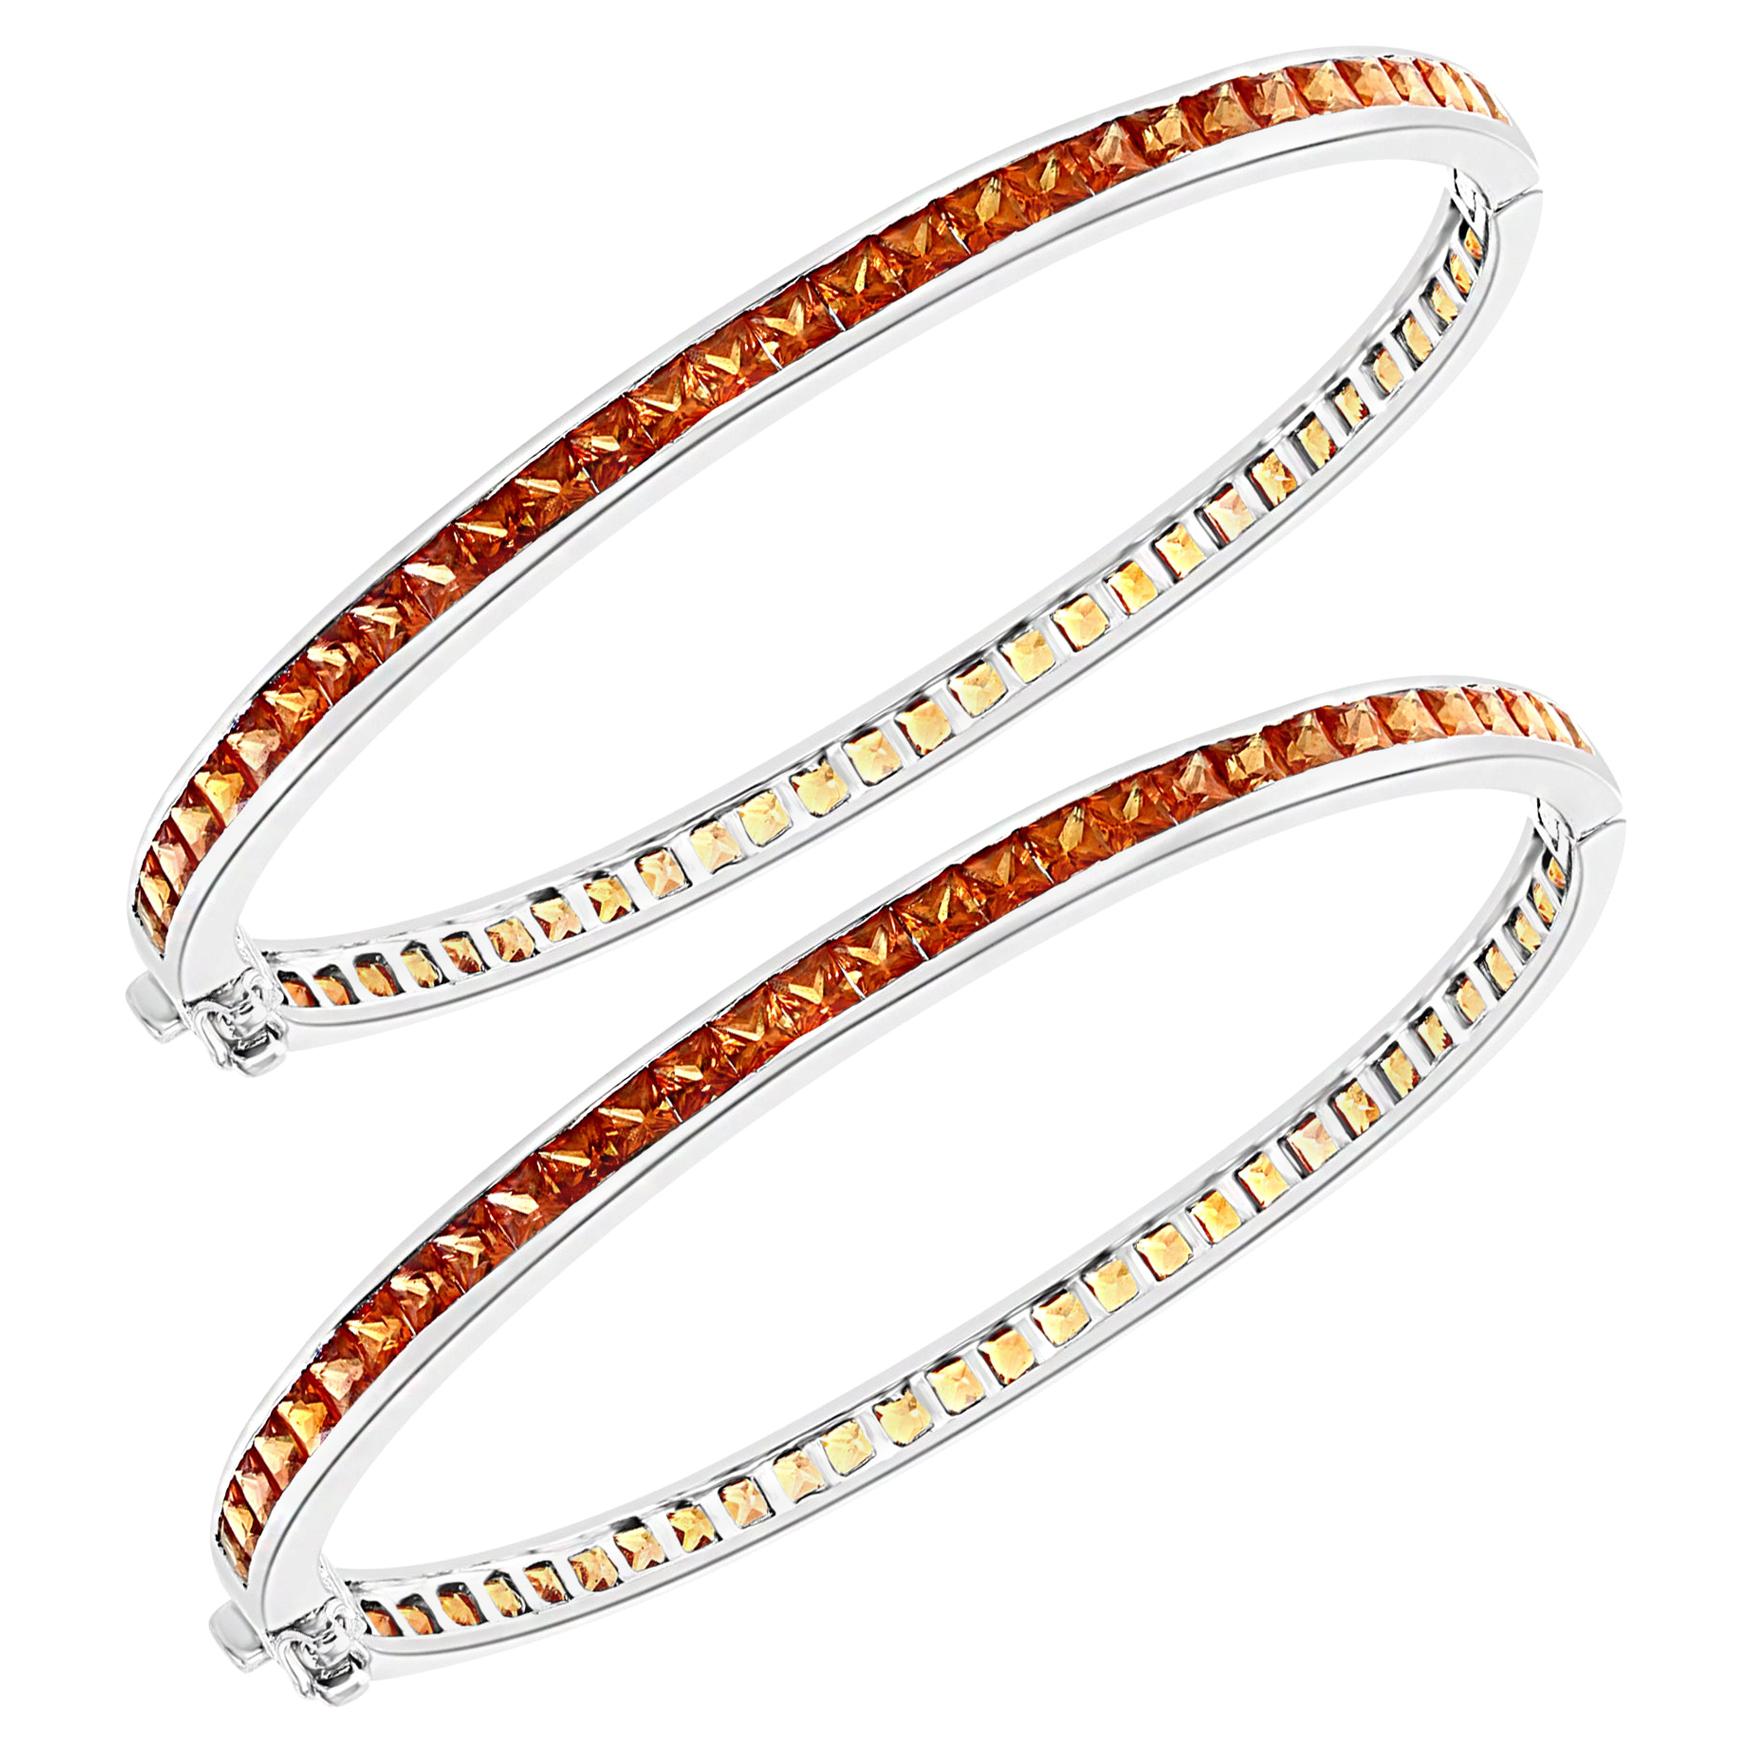 25 Carat Orange Sapphire Bangle /Bracelet Pair in 14 Karat White Gold 25 Grams